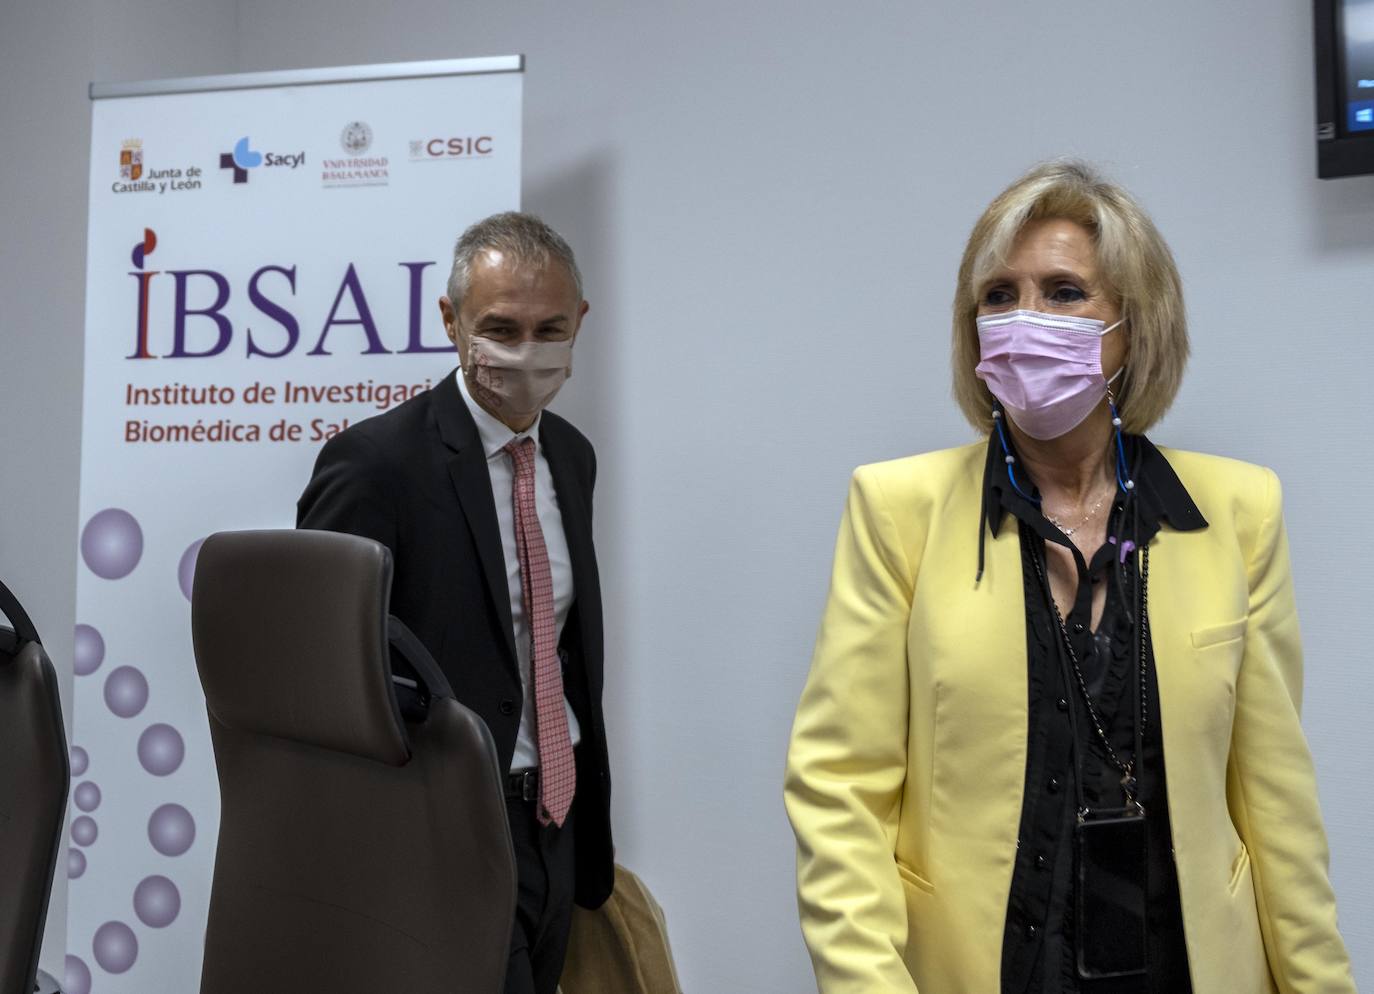 La consejera de Sanidad, Verónica Casado, preside la primera reunión de la Fundación del Instituto de Investigación Biomédica de Salamanca (Fibsal).